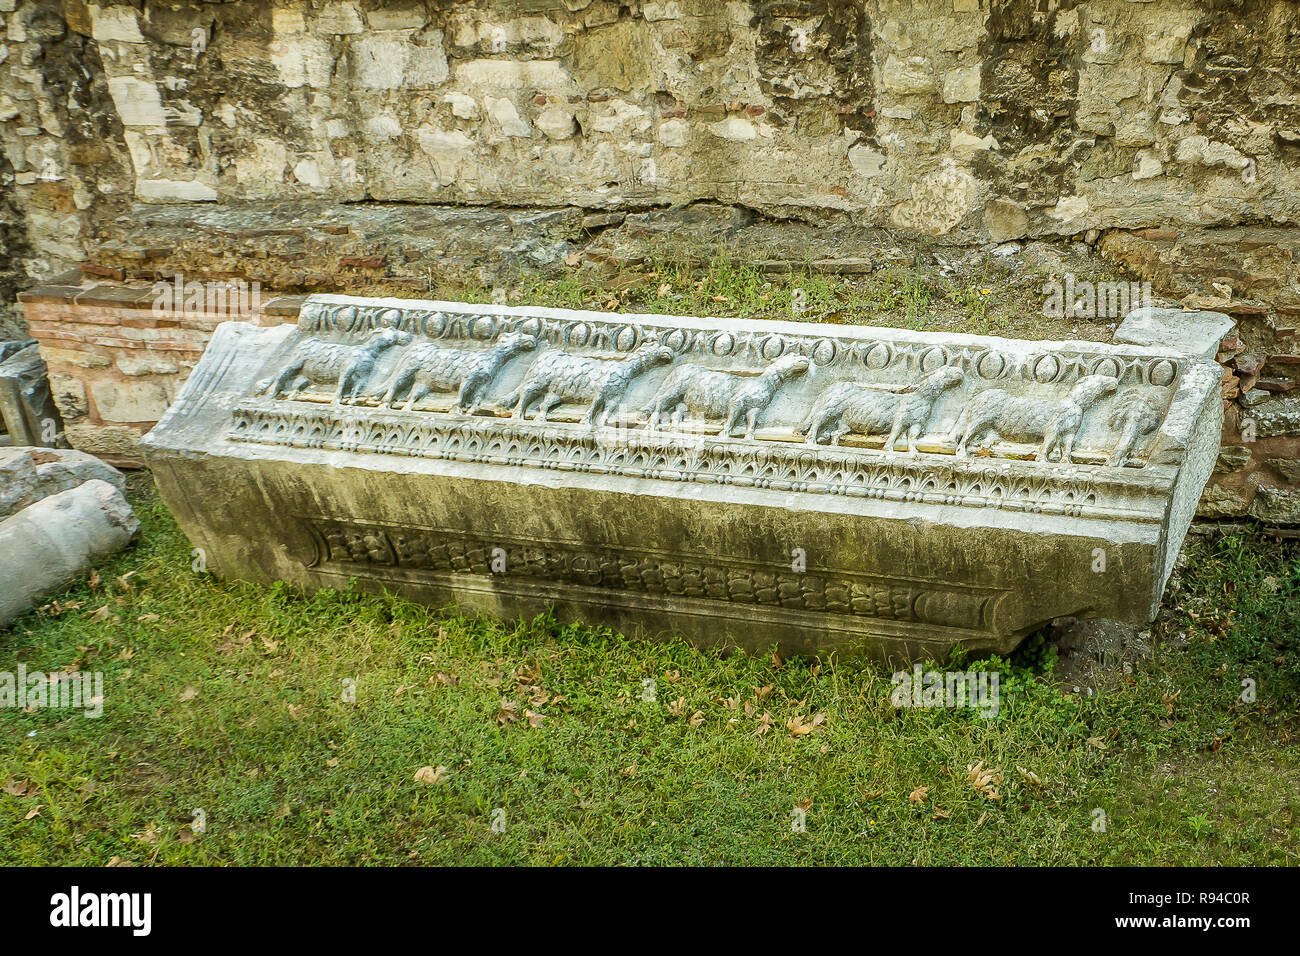 Frise byzantine de sept moutons, parmi les ruines dans le jardin de Sainte Sophie, Istanbul, Turquie, le 8 octobre 2013 Banque D'Images